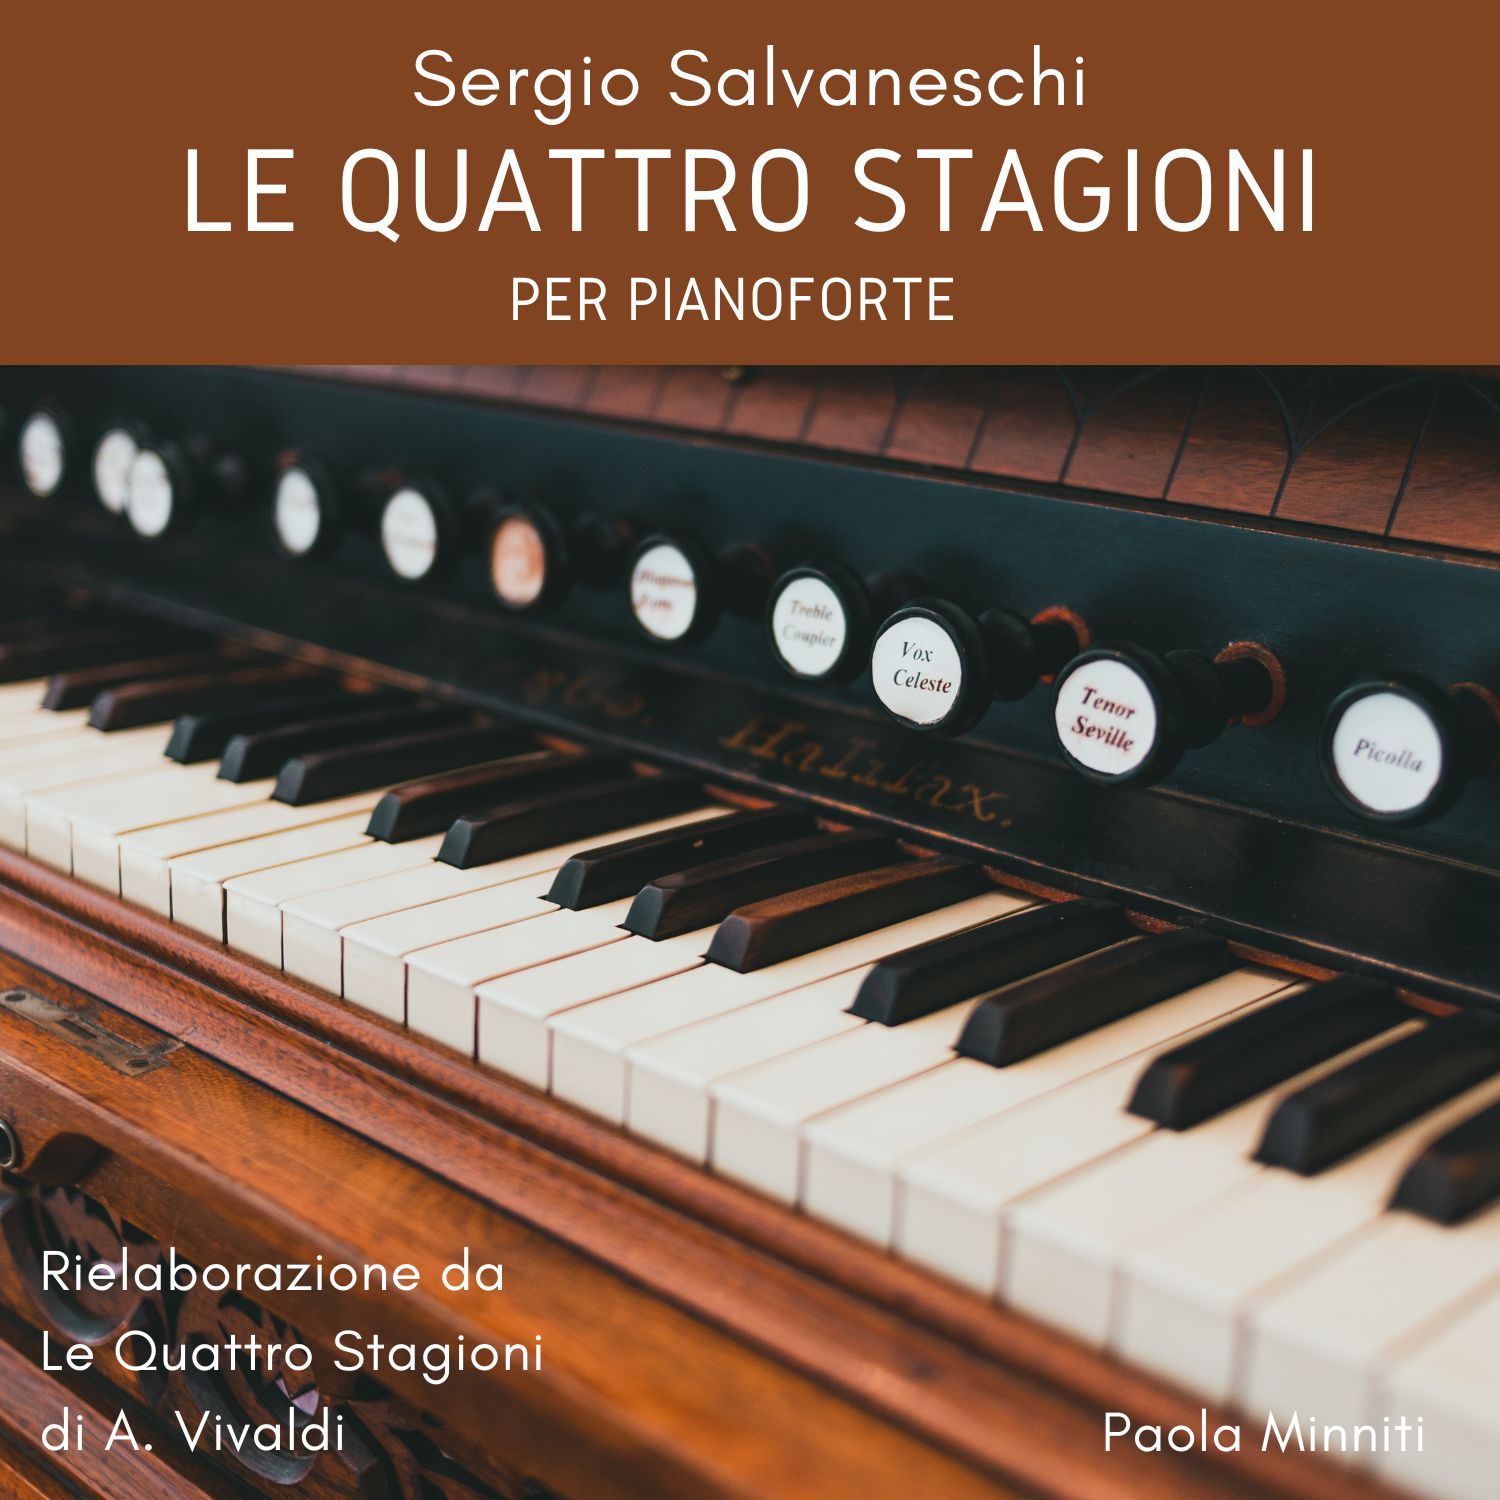 Le Quattro Stagioni per pianoforte - Rielaborazione da Le Quattro Stagioni di A. Vivaldi